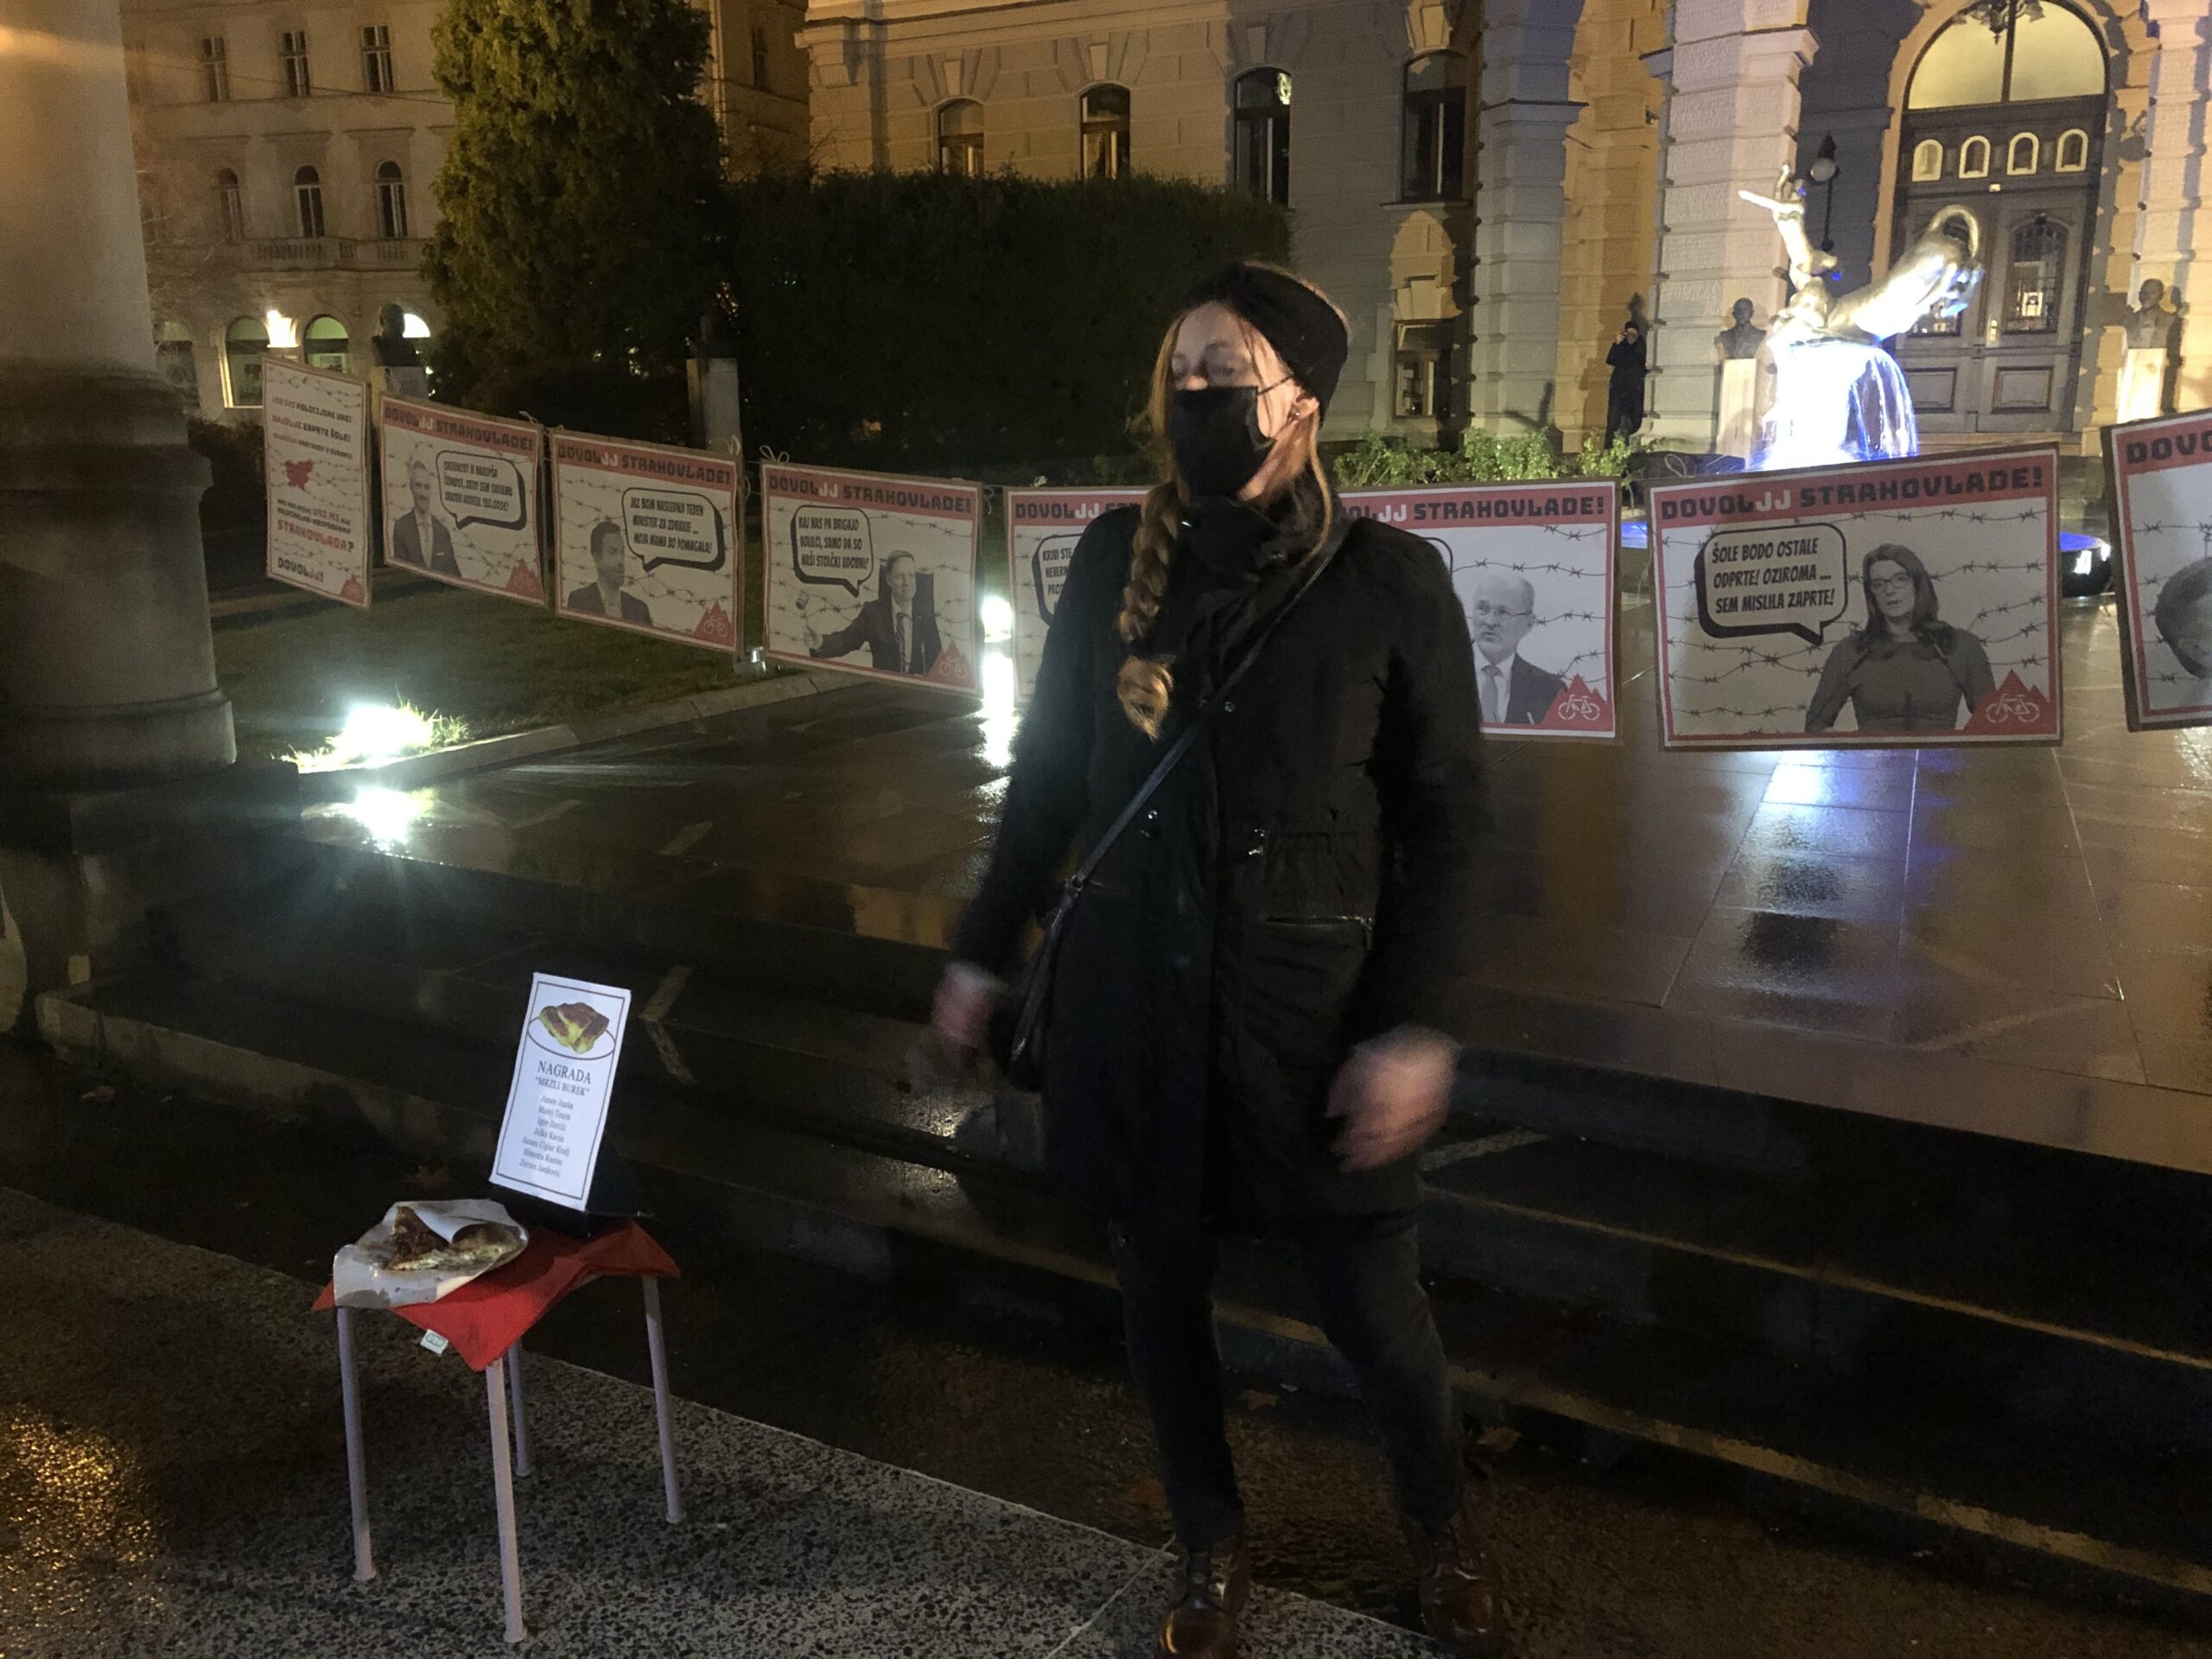 (V ŽIVO) Petkov protivladni protest, v okviru katerega bodo pred ljubljansko univerzo podelili simbolične nagrade “Mrzli burek”